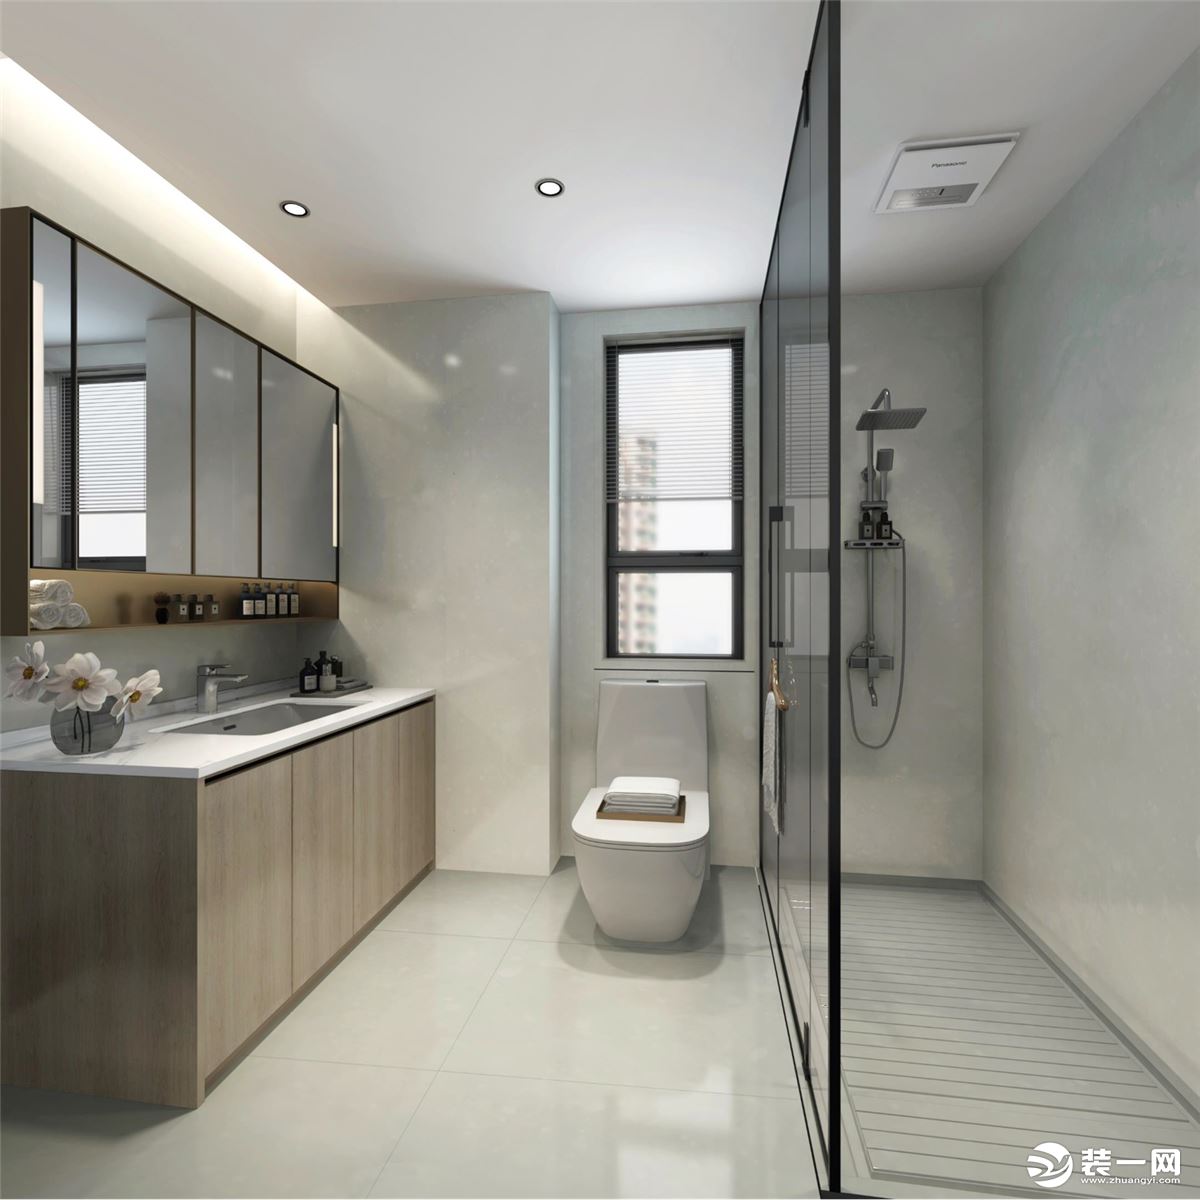 卫生间以纯色做空间设计，地面与墙面选用米色瓷砖做铺贴，美观时尚的同时防水性也更强。进门靠近墙角处做洗